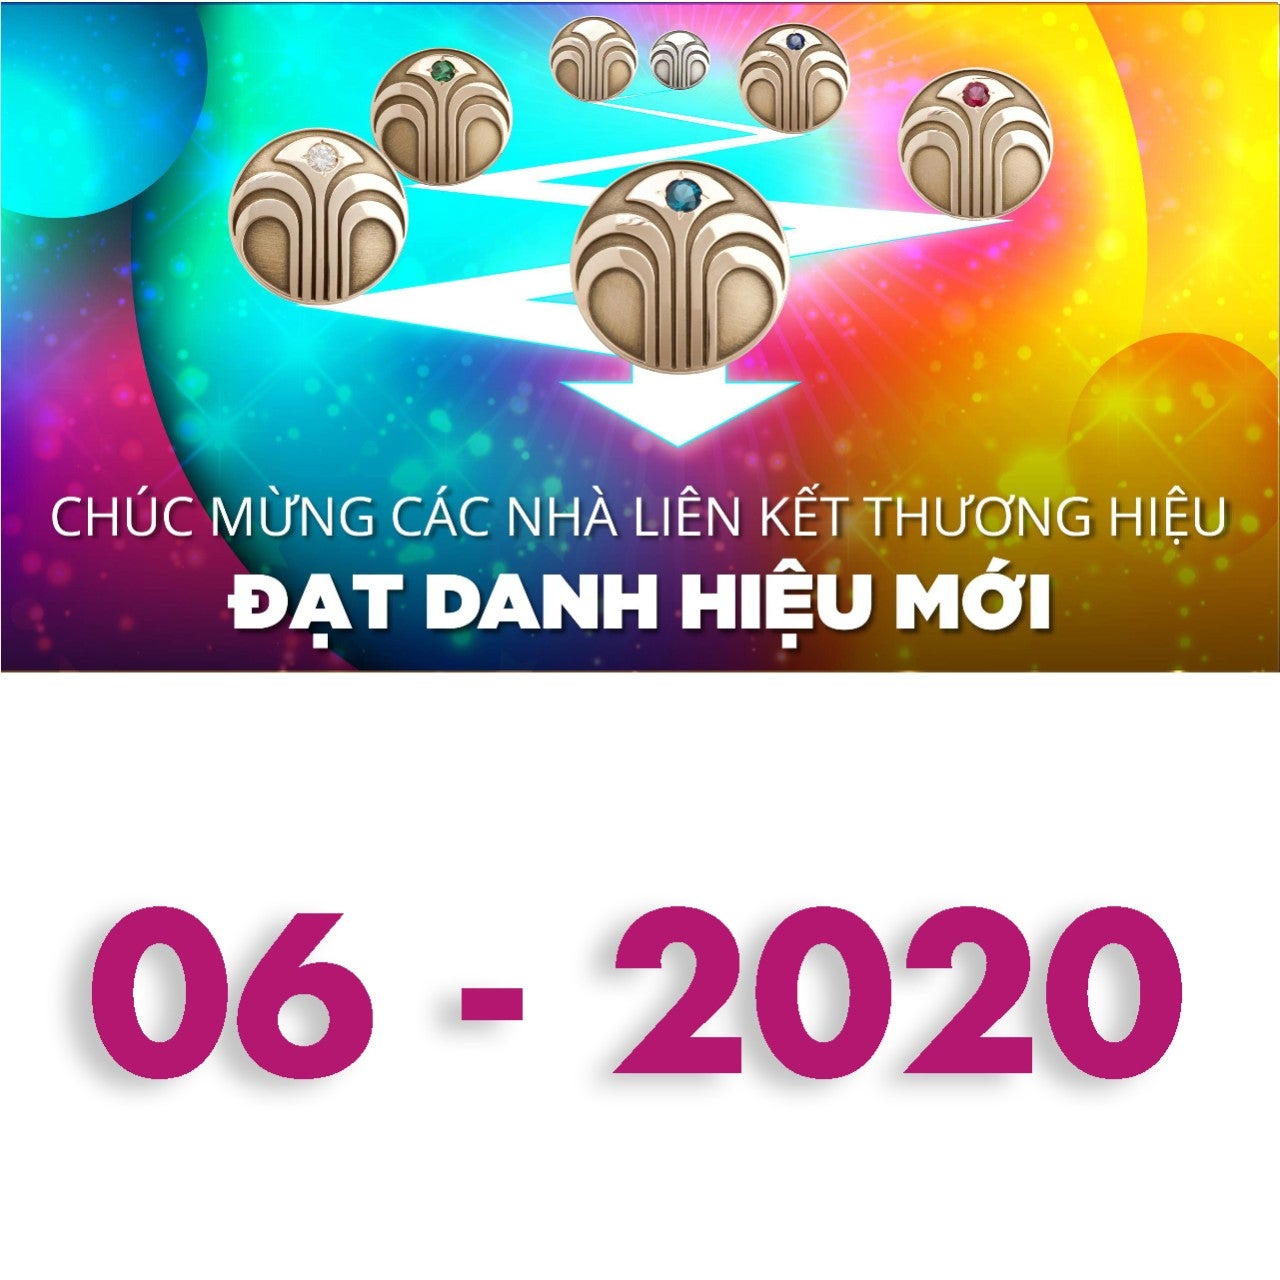 2020-06